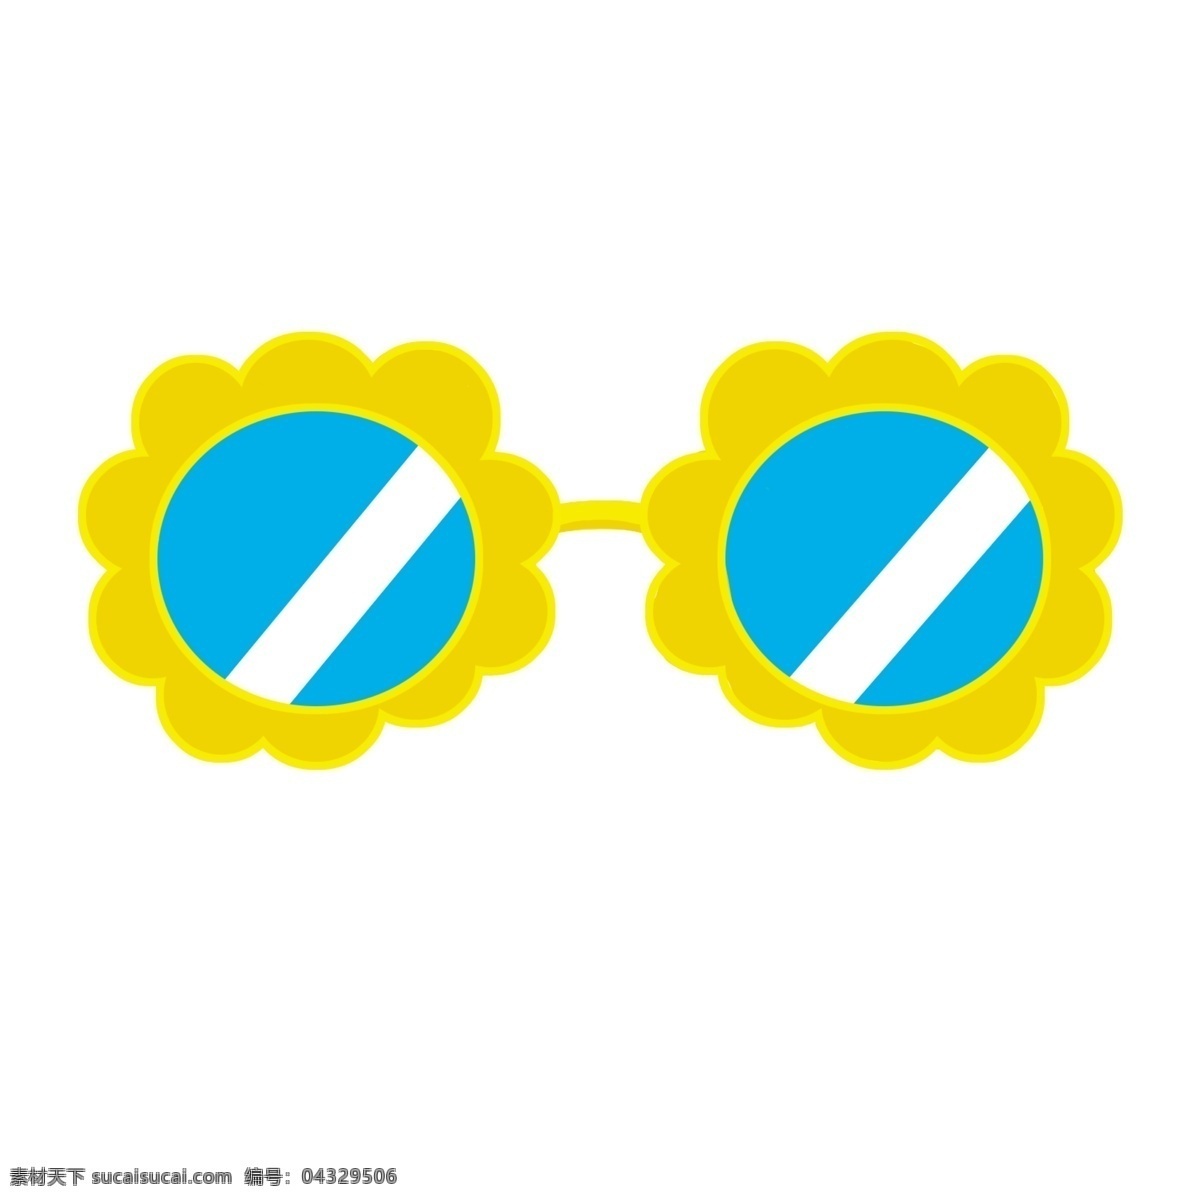 创意 向日葵 眼镜 手绘眼镜 眼睛 太阳镜